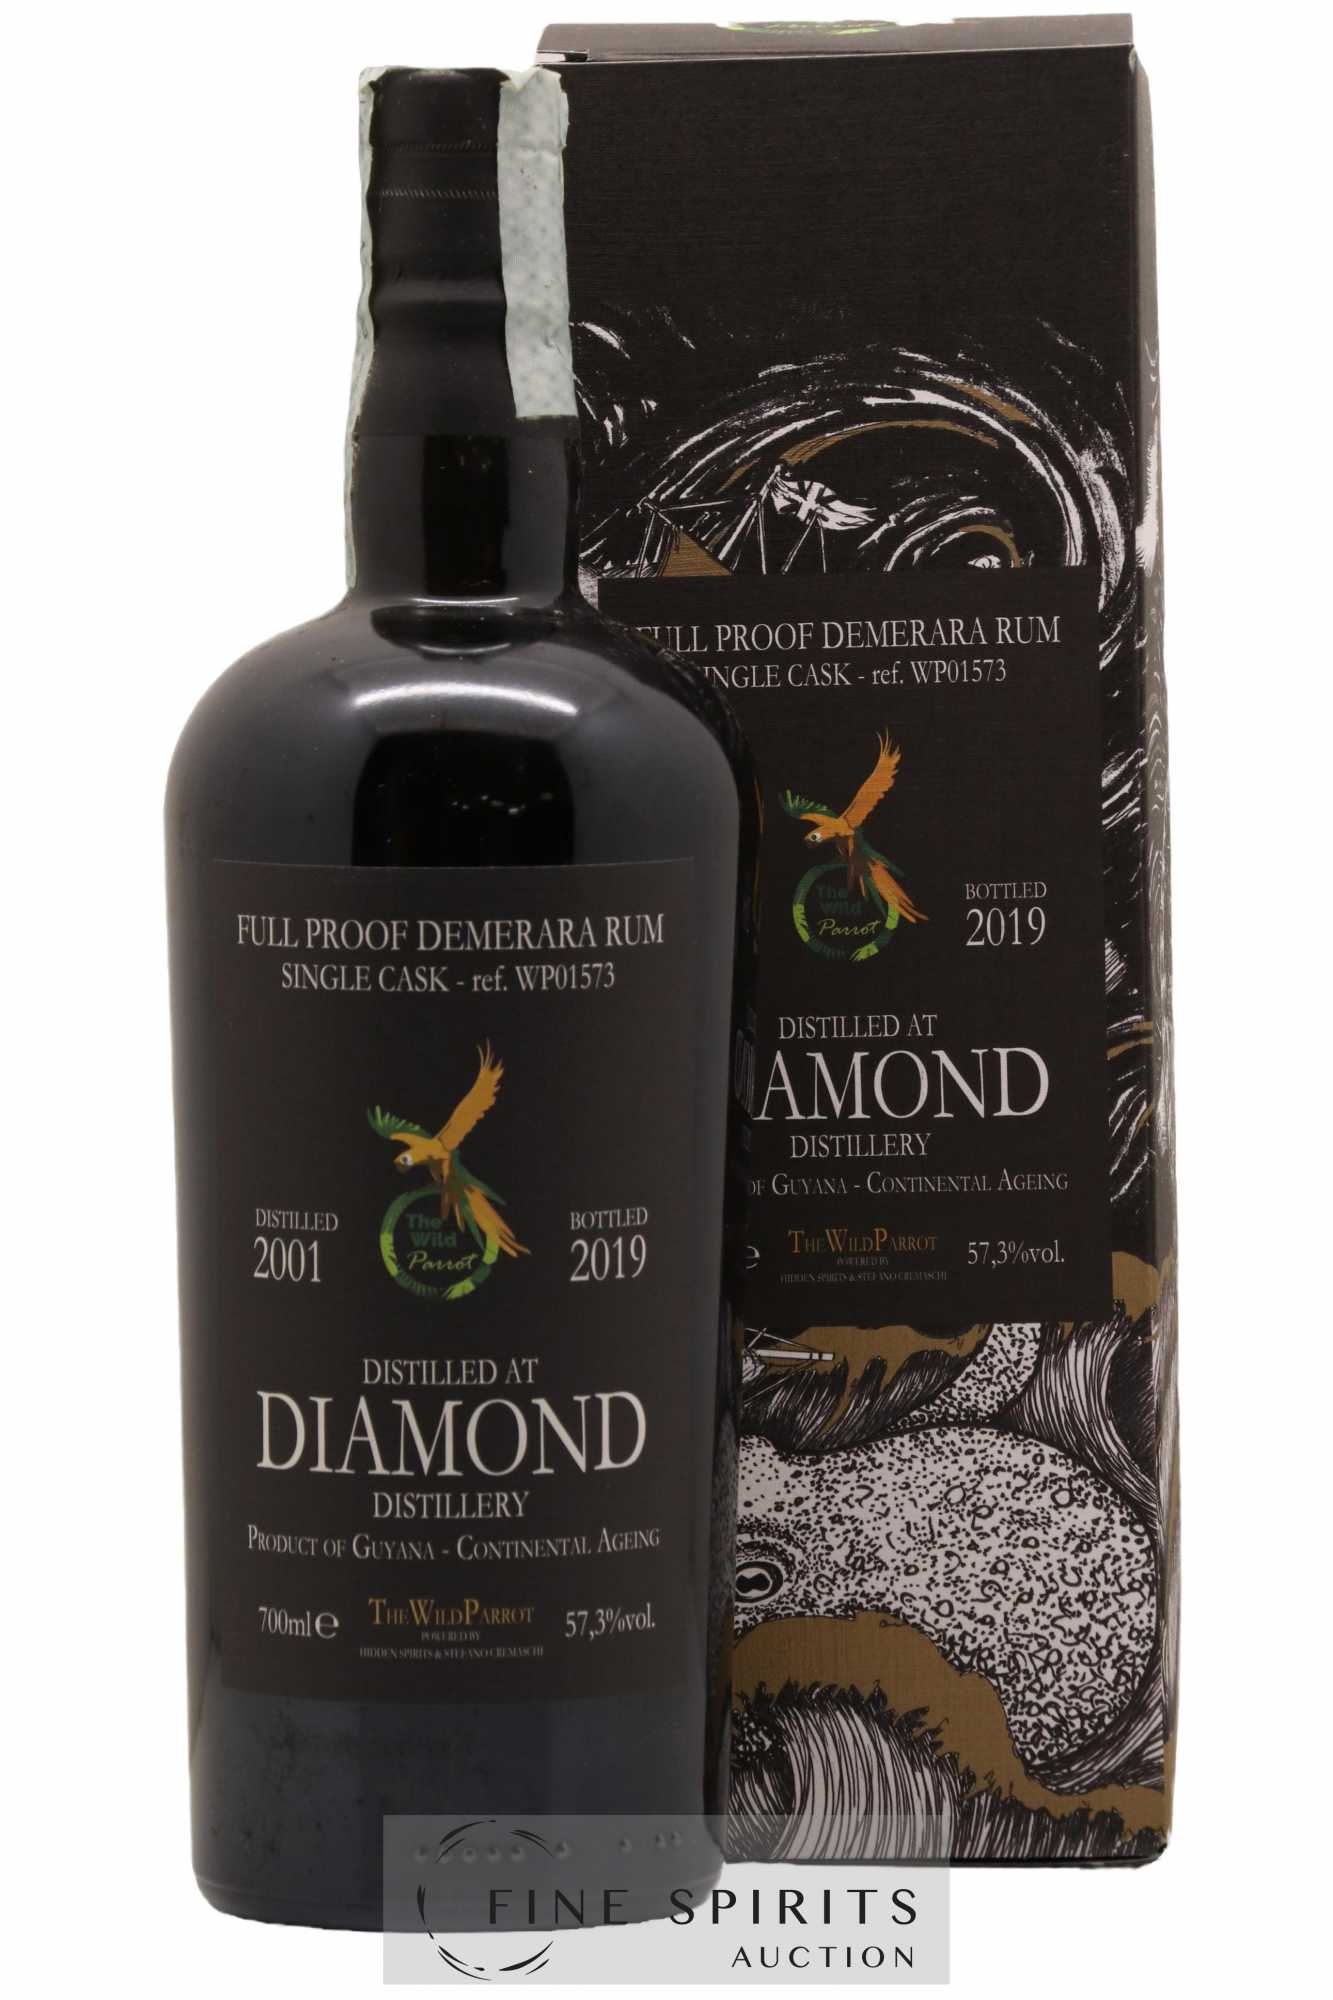 Diamond 2001 Hidden Spirits The Wild Parrot Single Cask n°WP01573 - bottled 2019 Full Proof